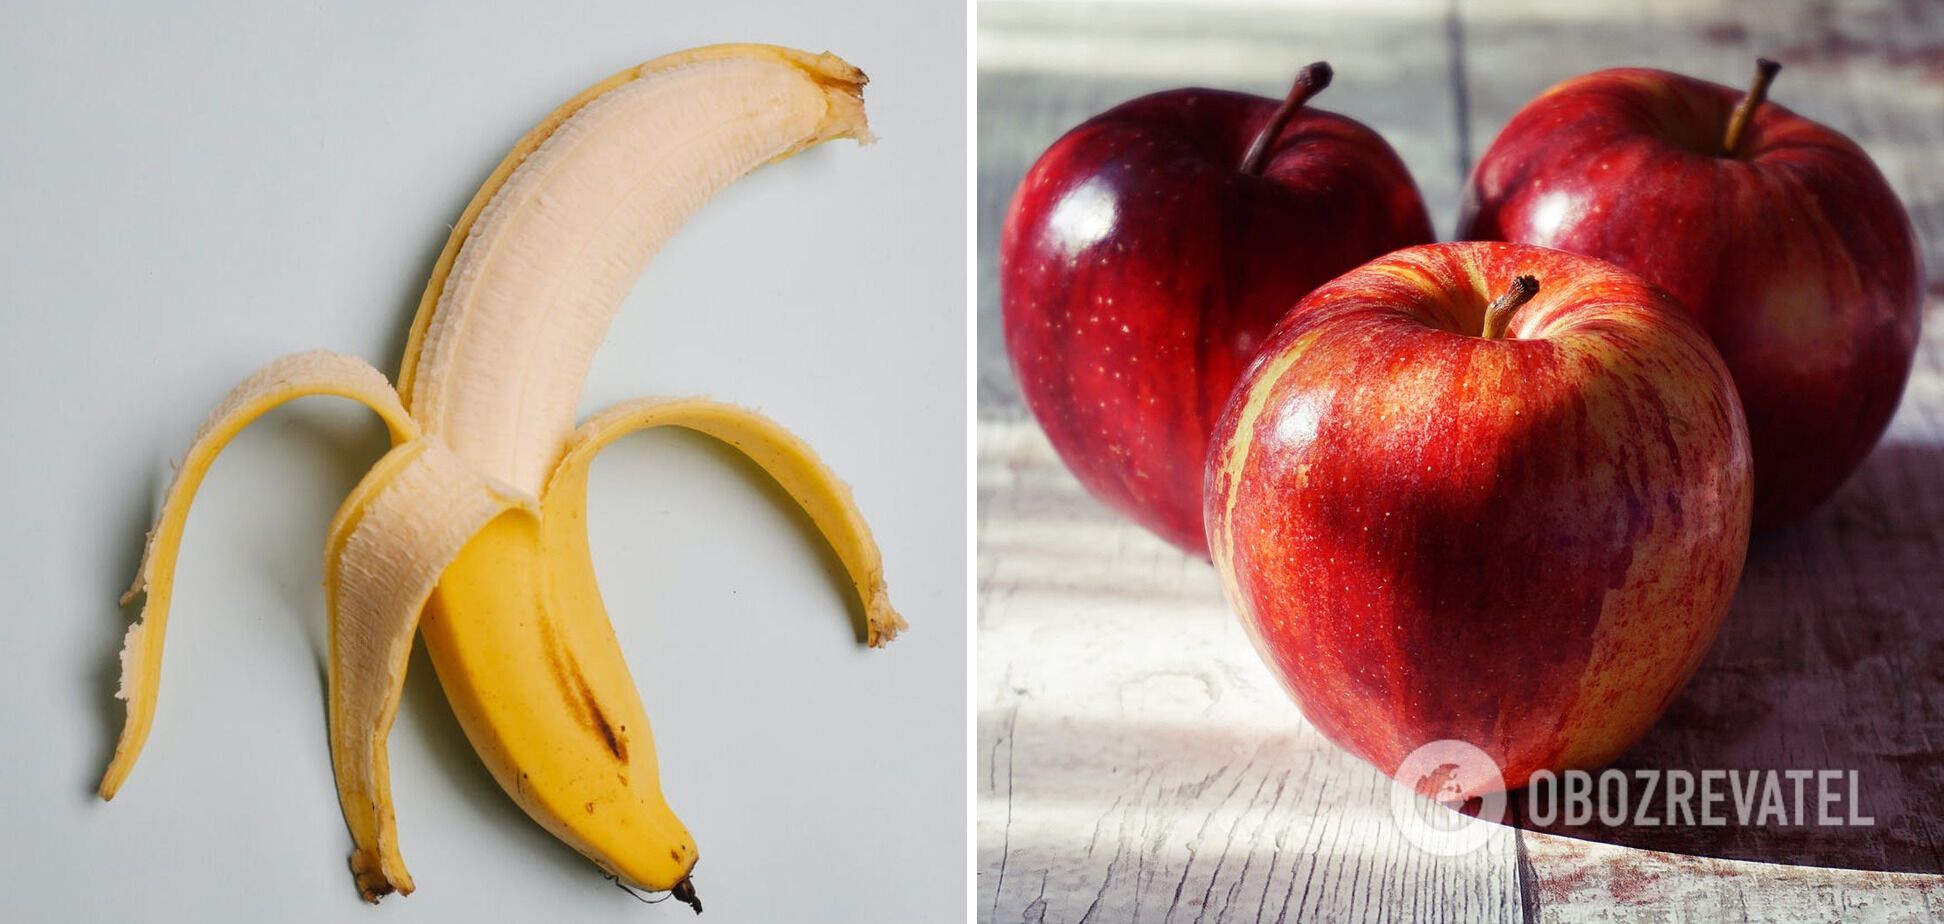 Jabłka i banany pomogą przyspieszyć proces dojrzewania awokado